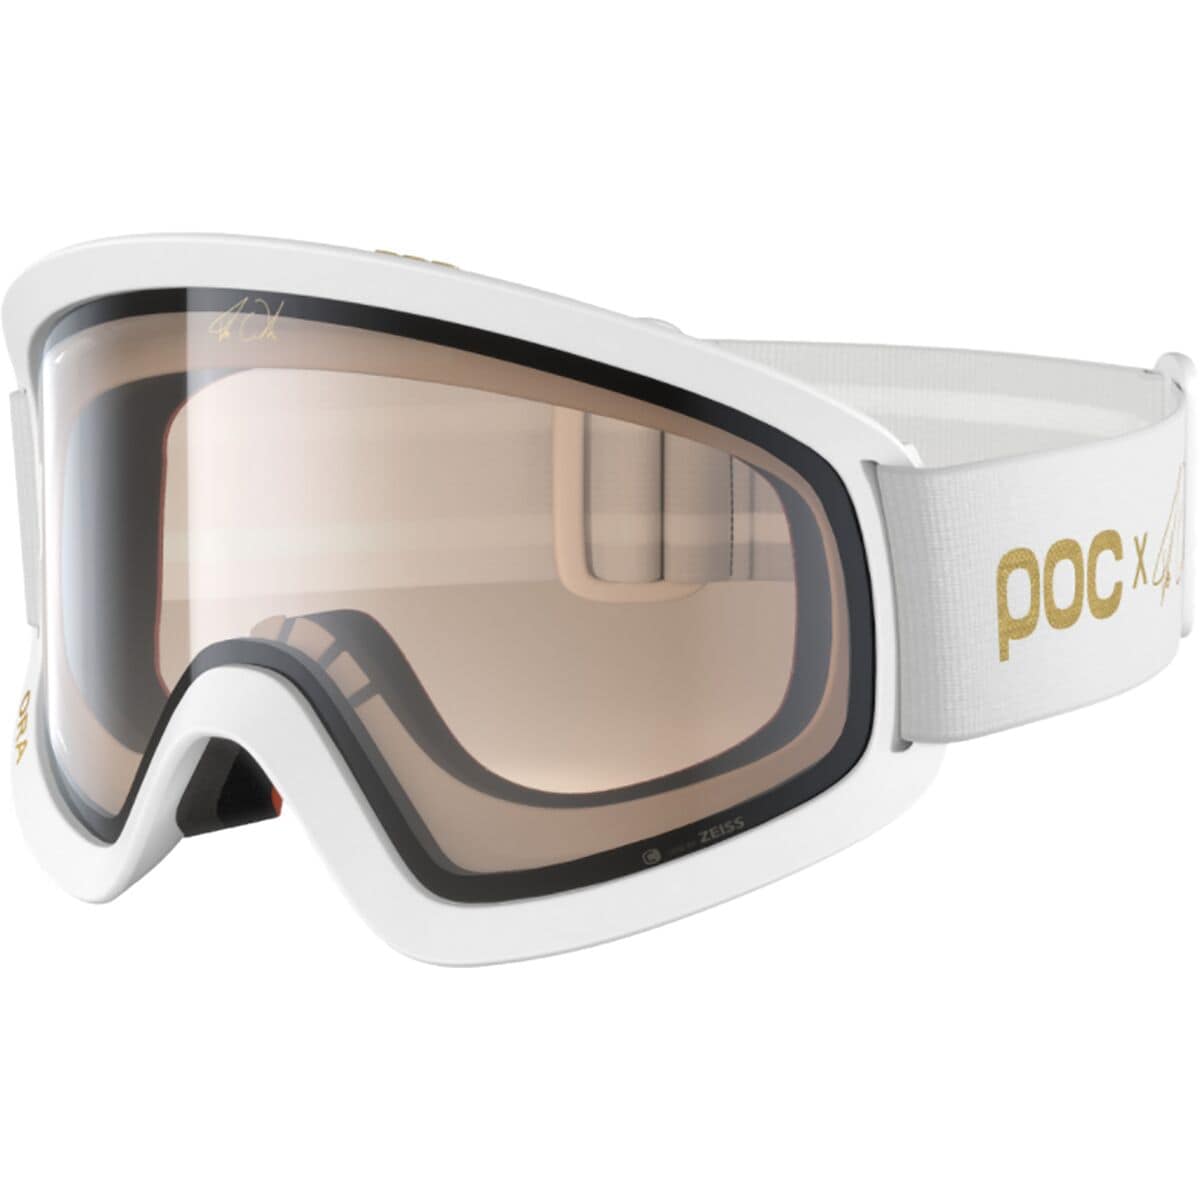 POC Ora Clarity Fabio Edition Goggles Hydrogen White/Gold, One Size